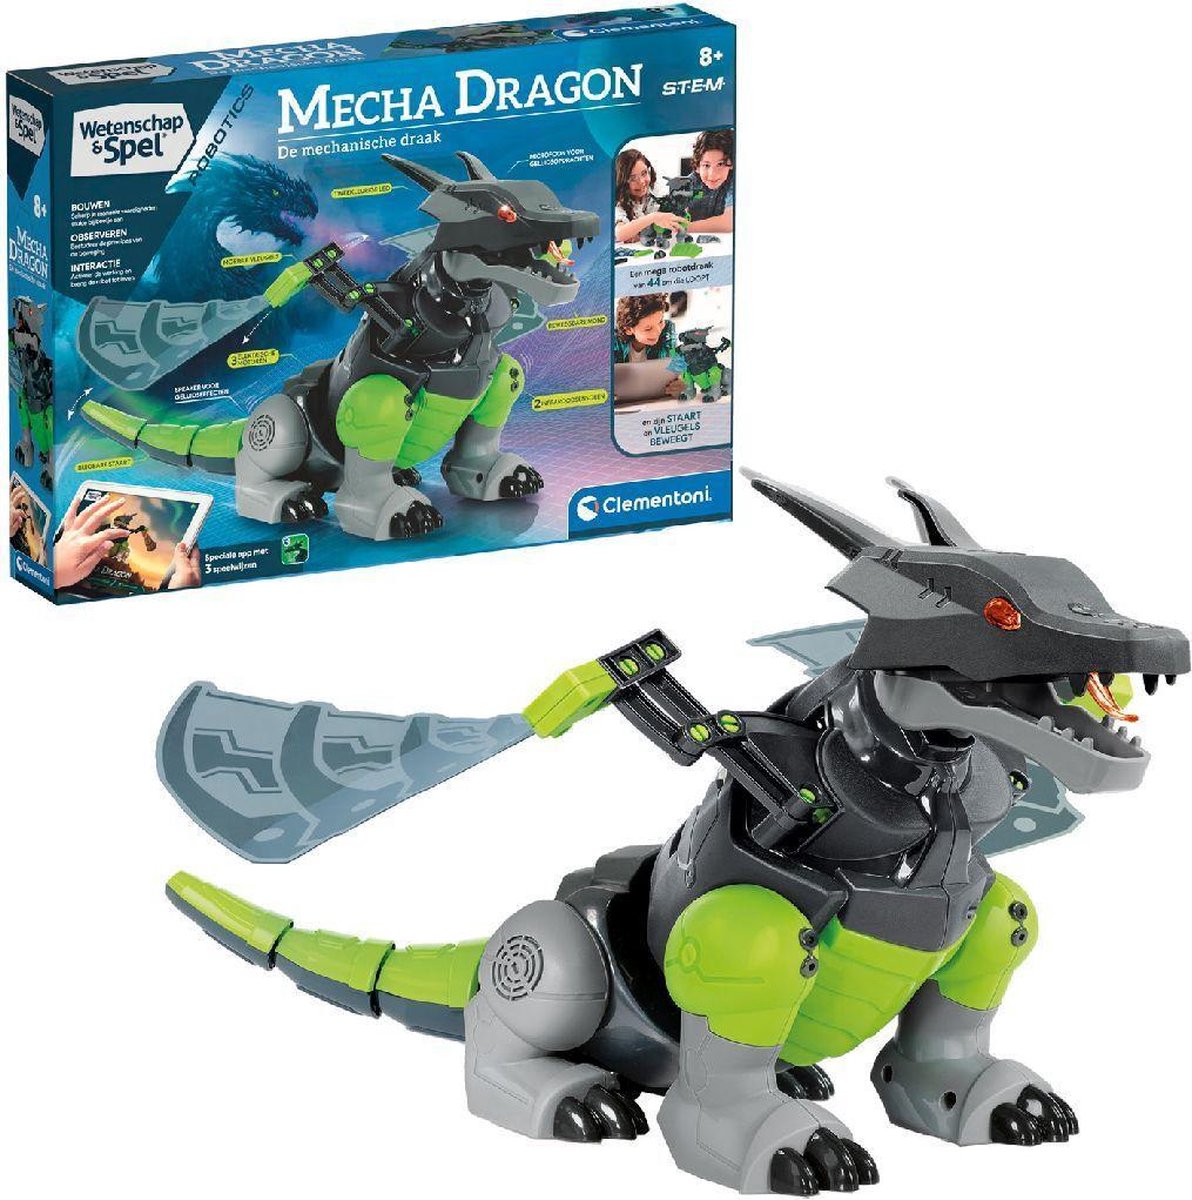 Clementoni Wetenschap & Spel - Mecha Dragon - Speelgoed van het Jaar - Robot Speelgoed - STEM-speelgoed